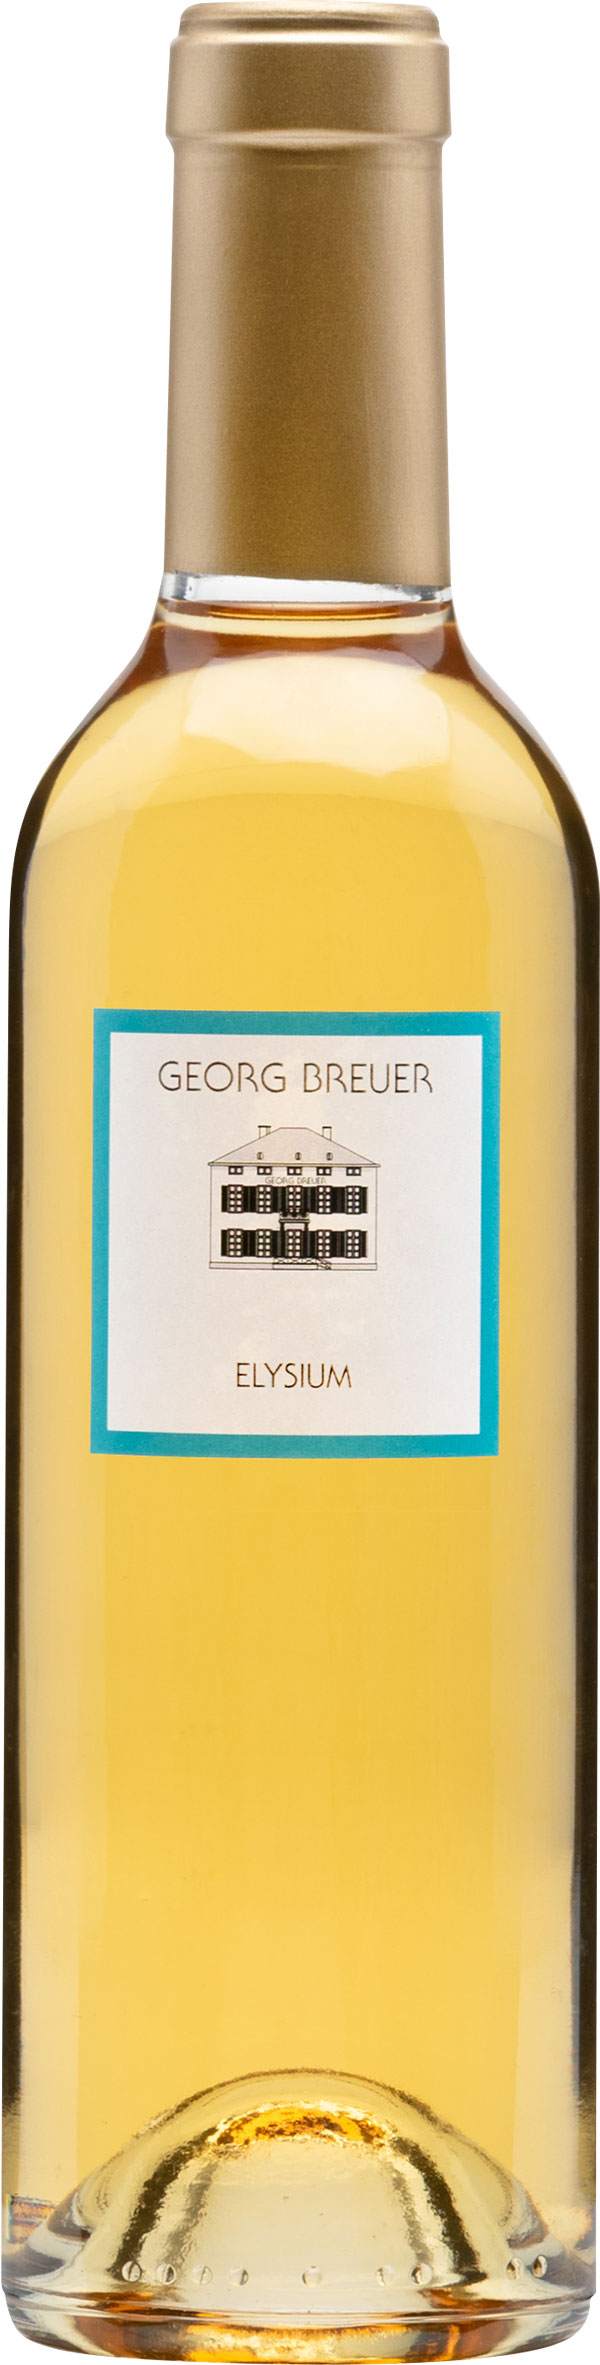 Elysium Riesling Beerenauslese halbe Flasche